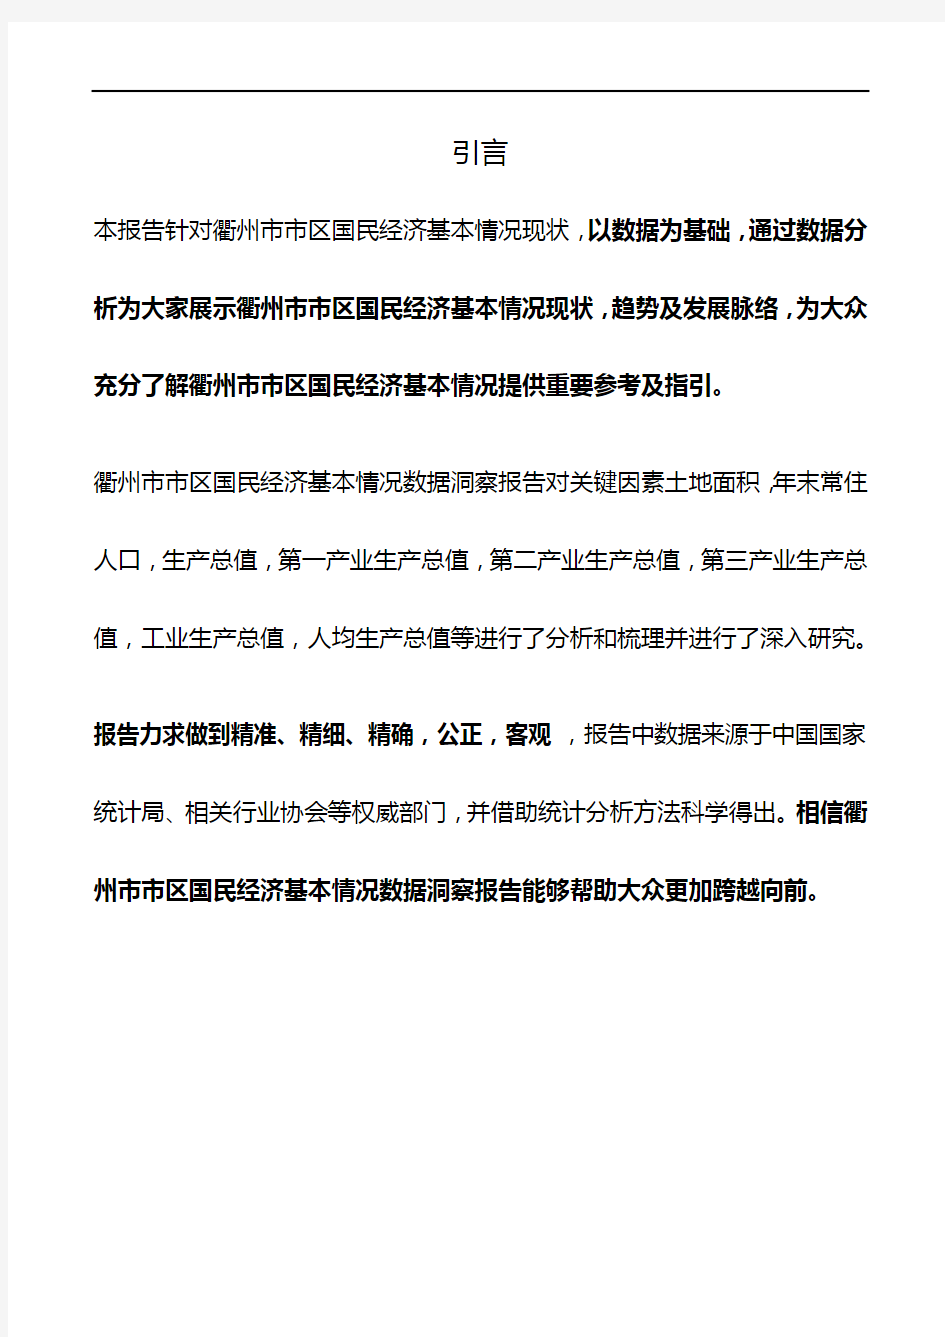 浙江省衢州市市区国民经济基本情况数据洞察报告2019版